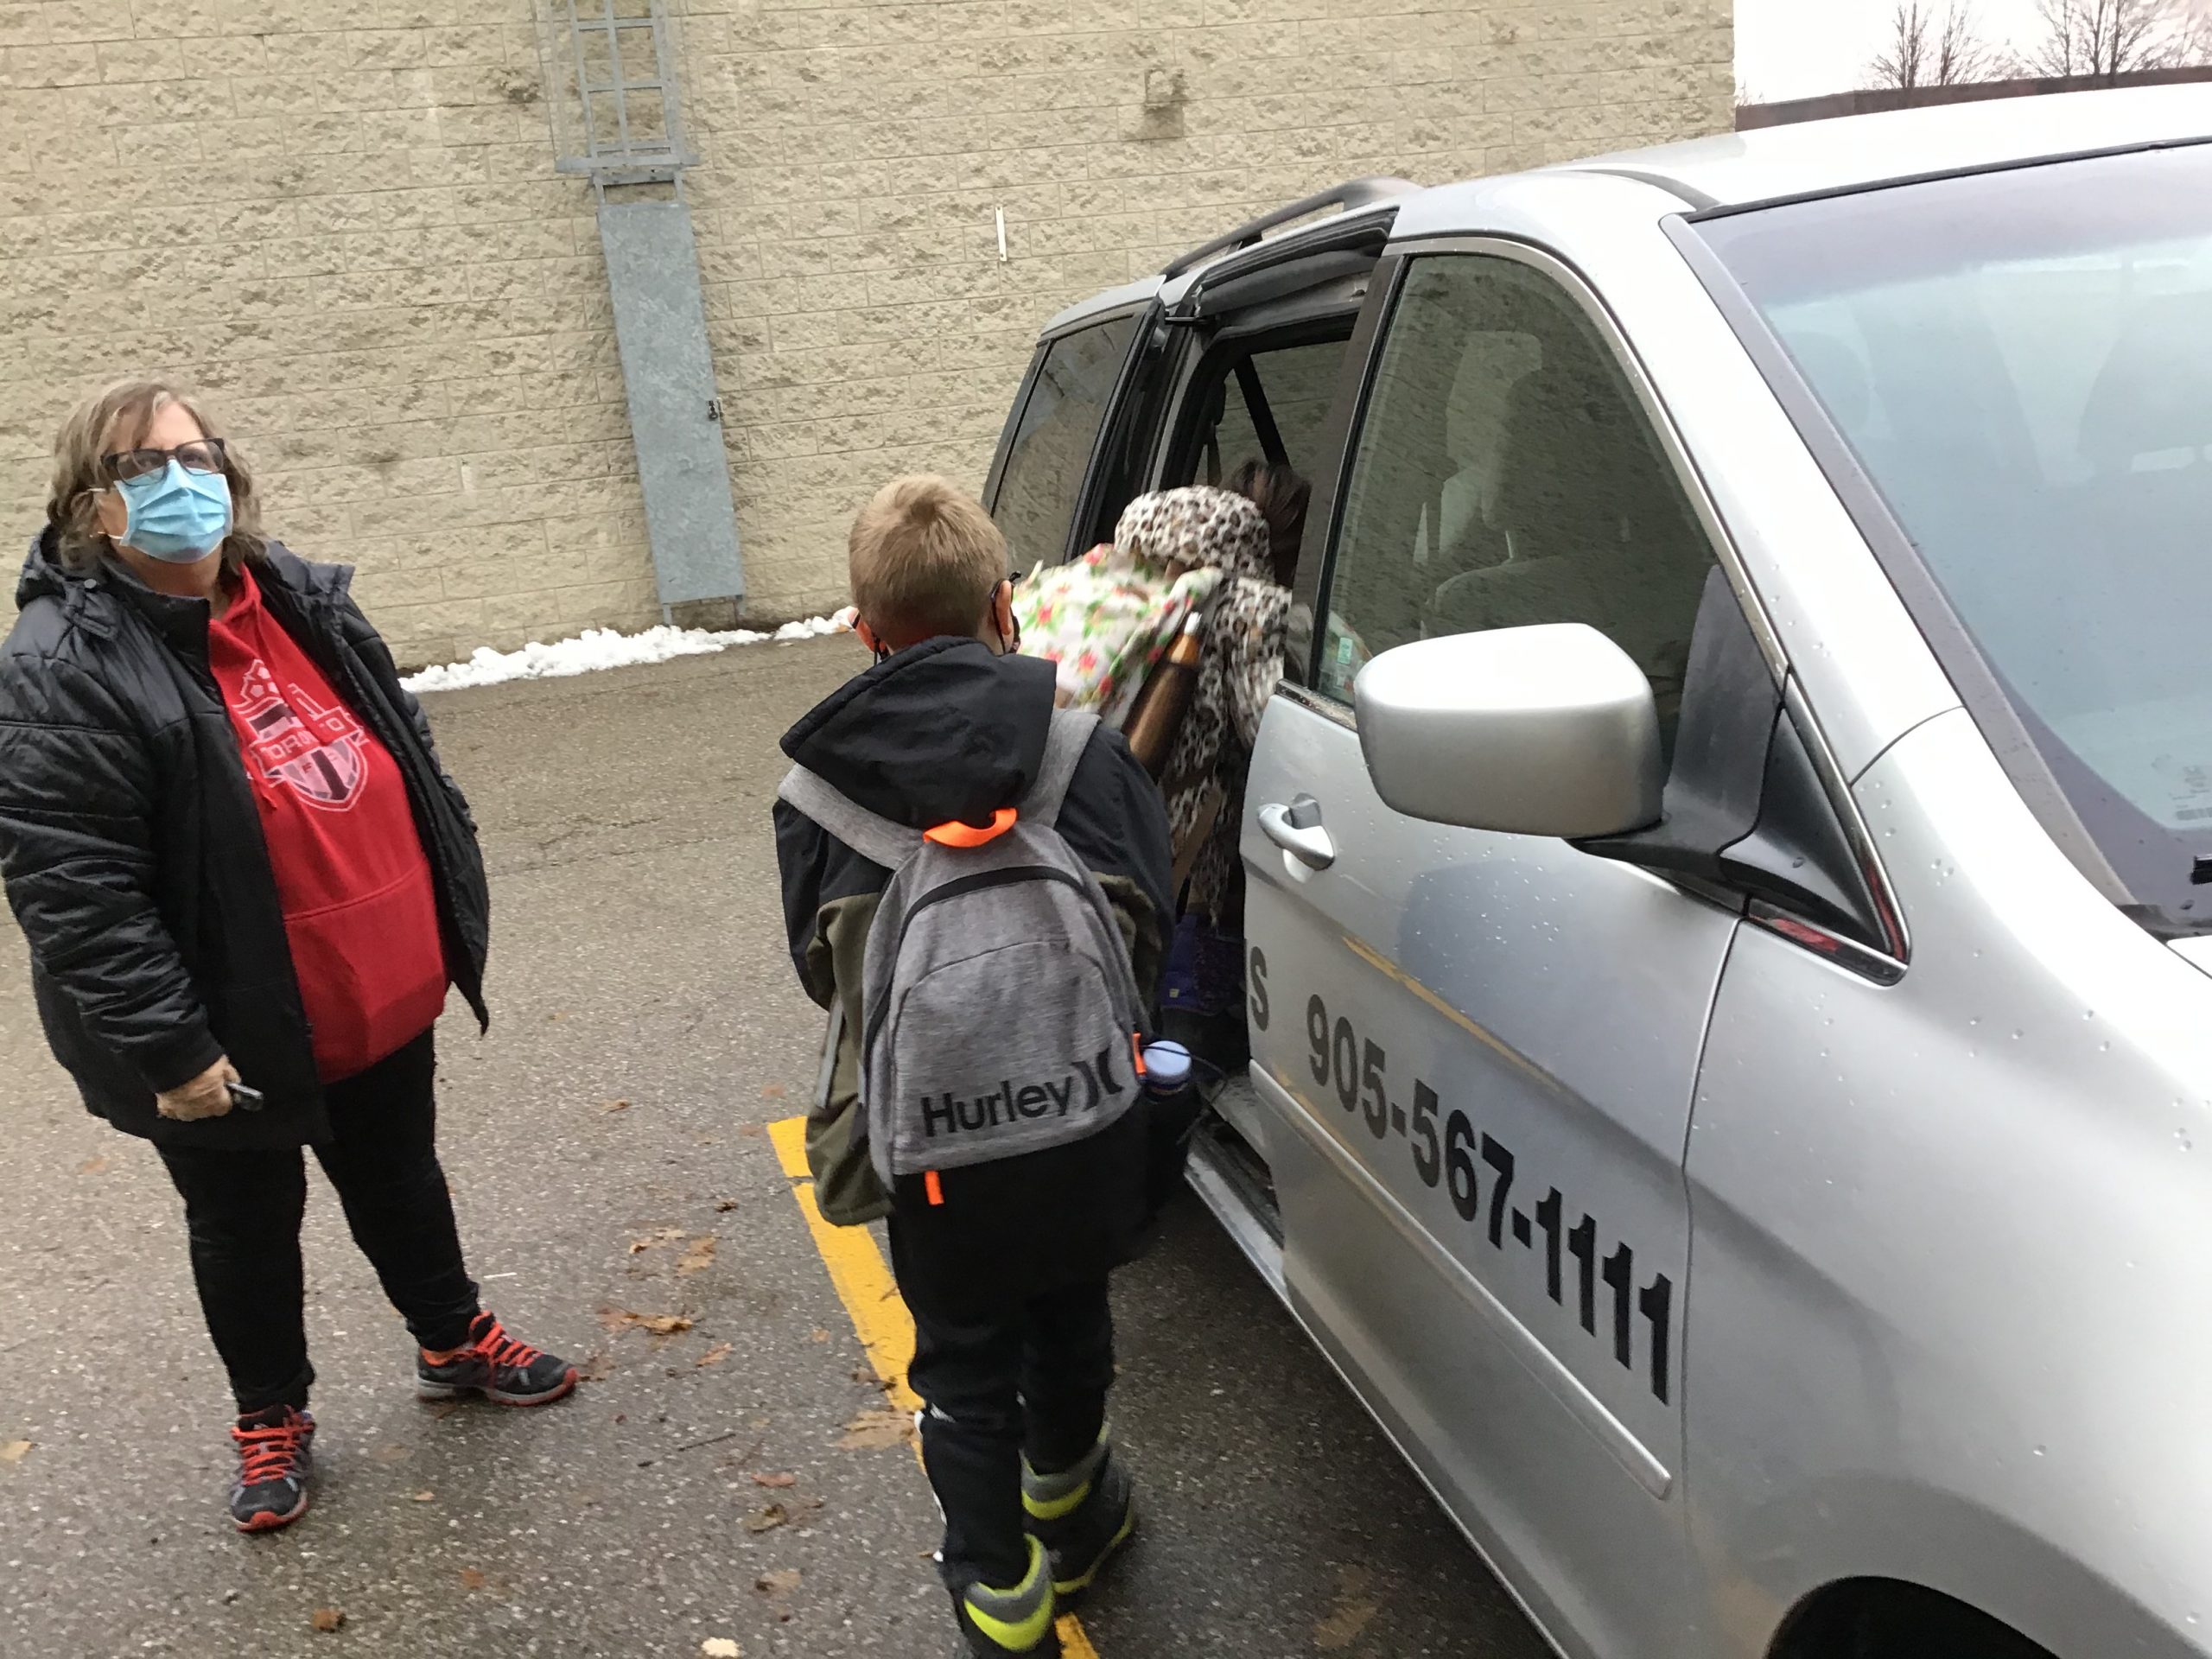 Group of kids going into a school van